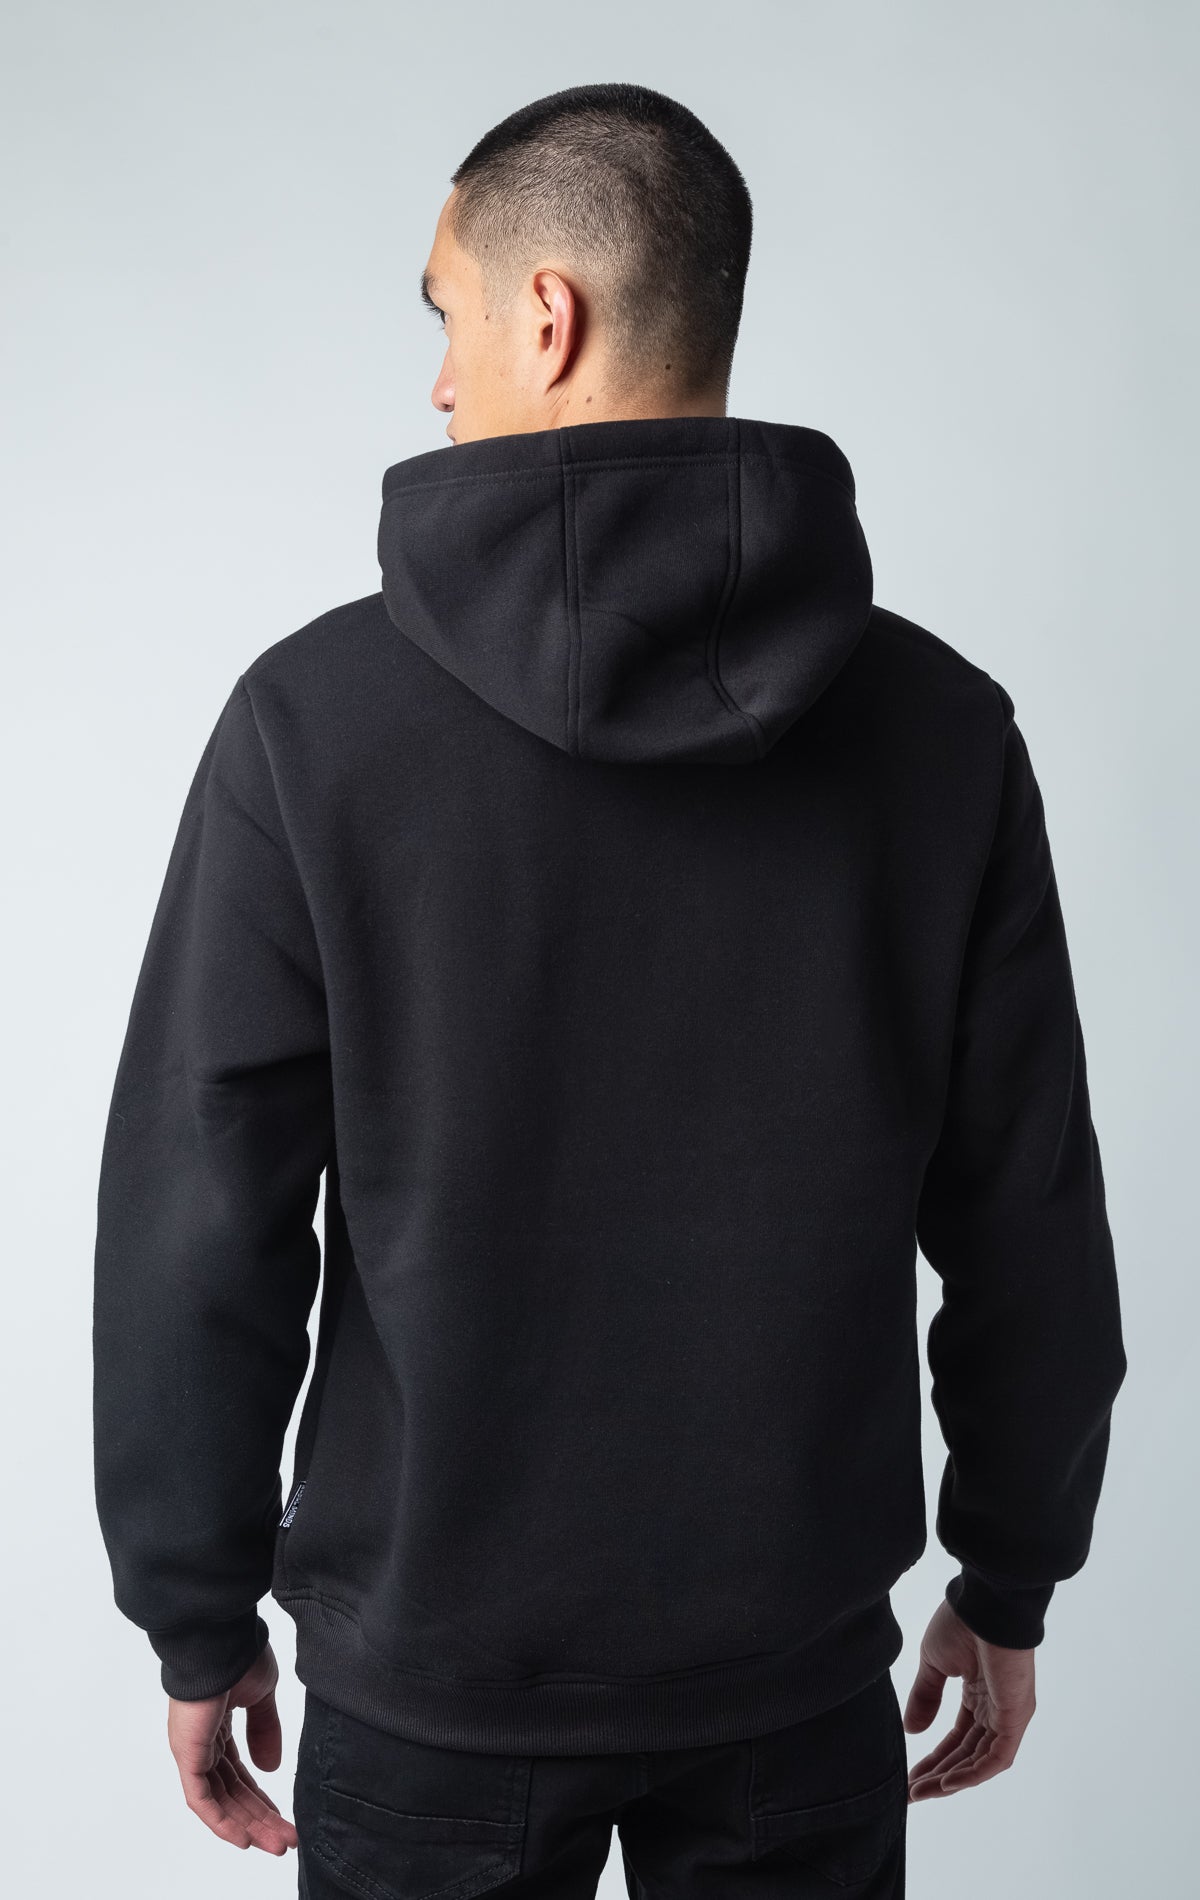 Black graphic print hoodie